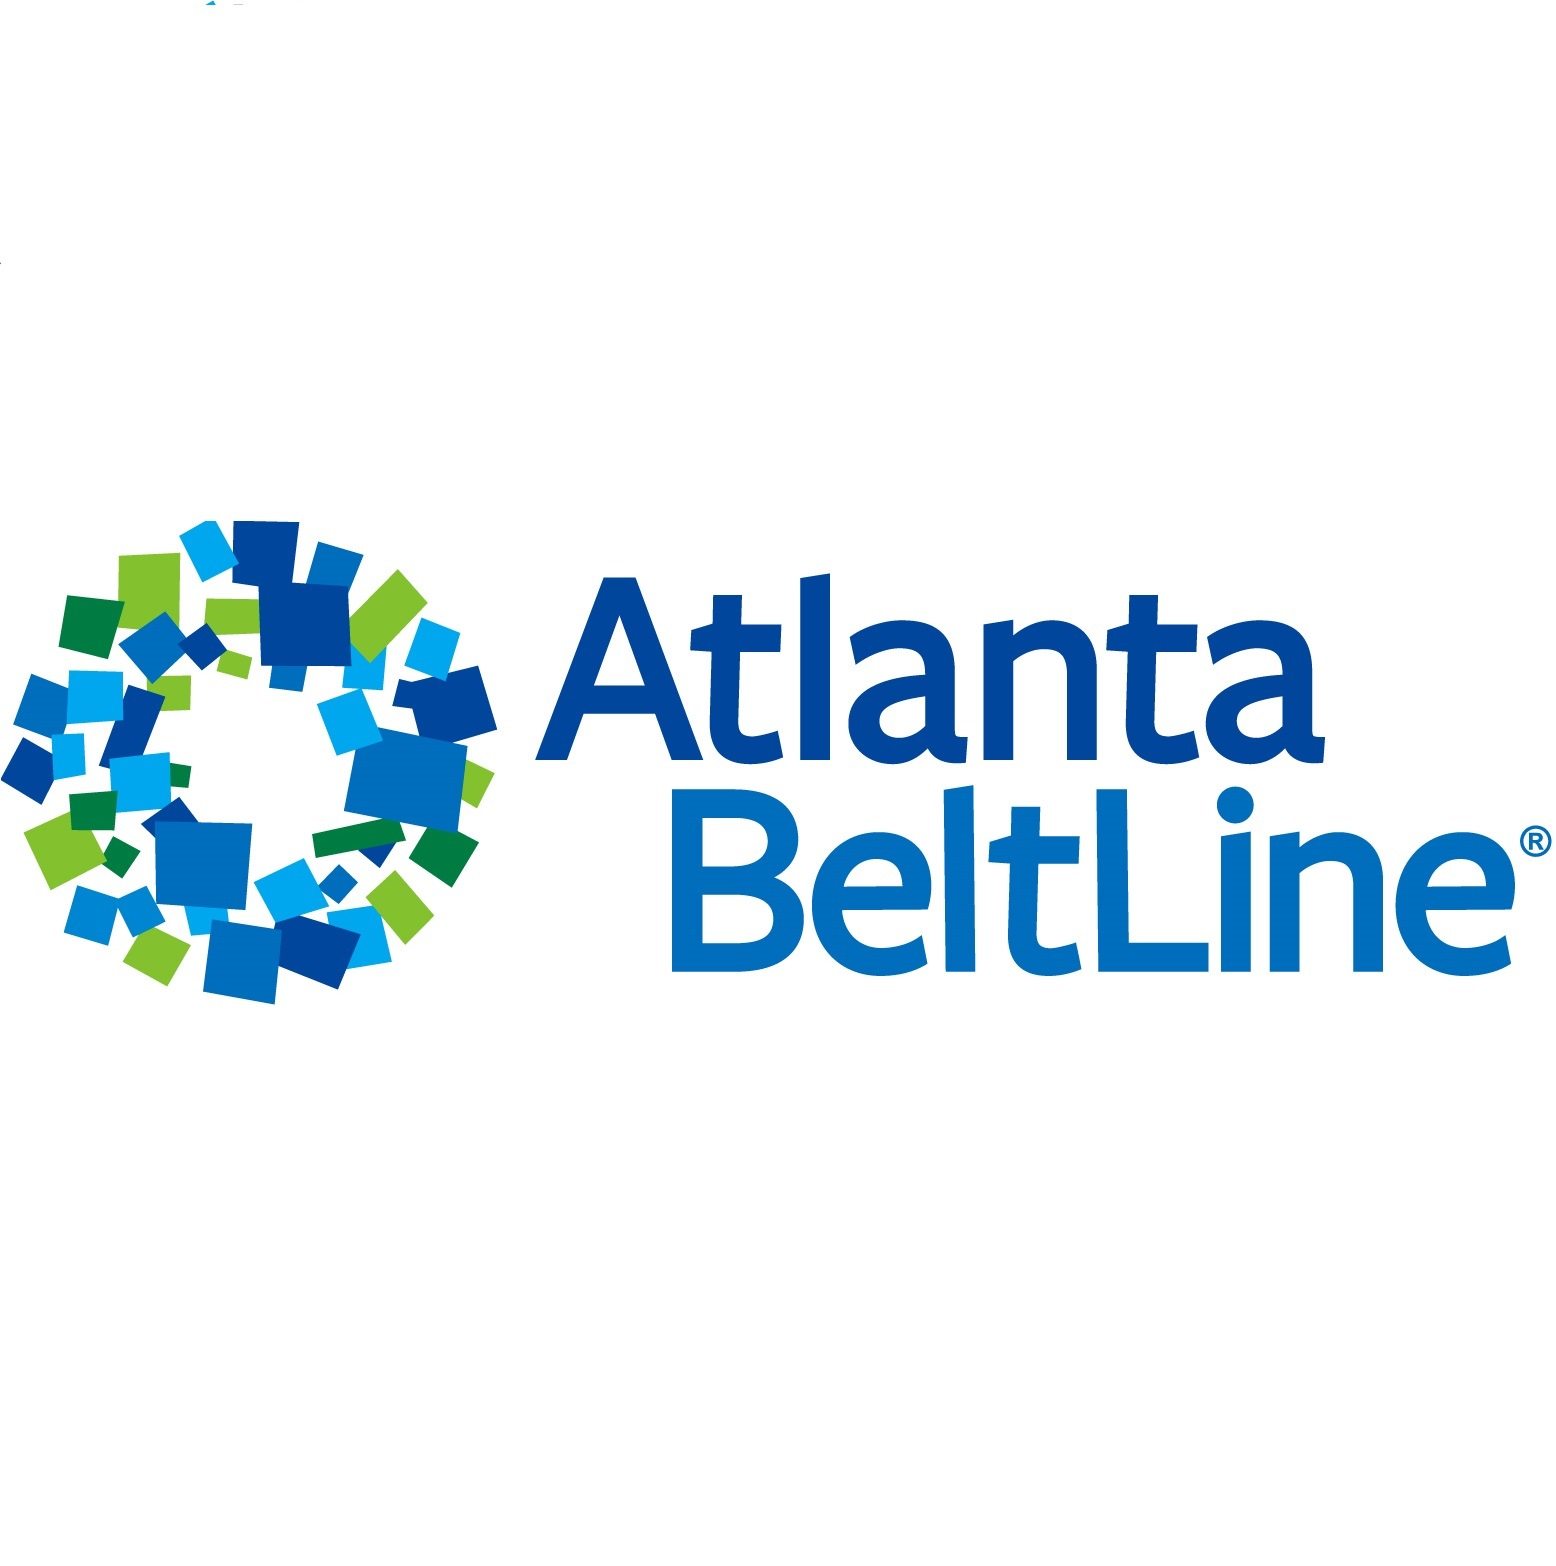 Atlanta Beltline